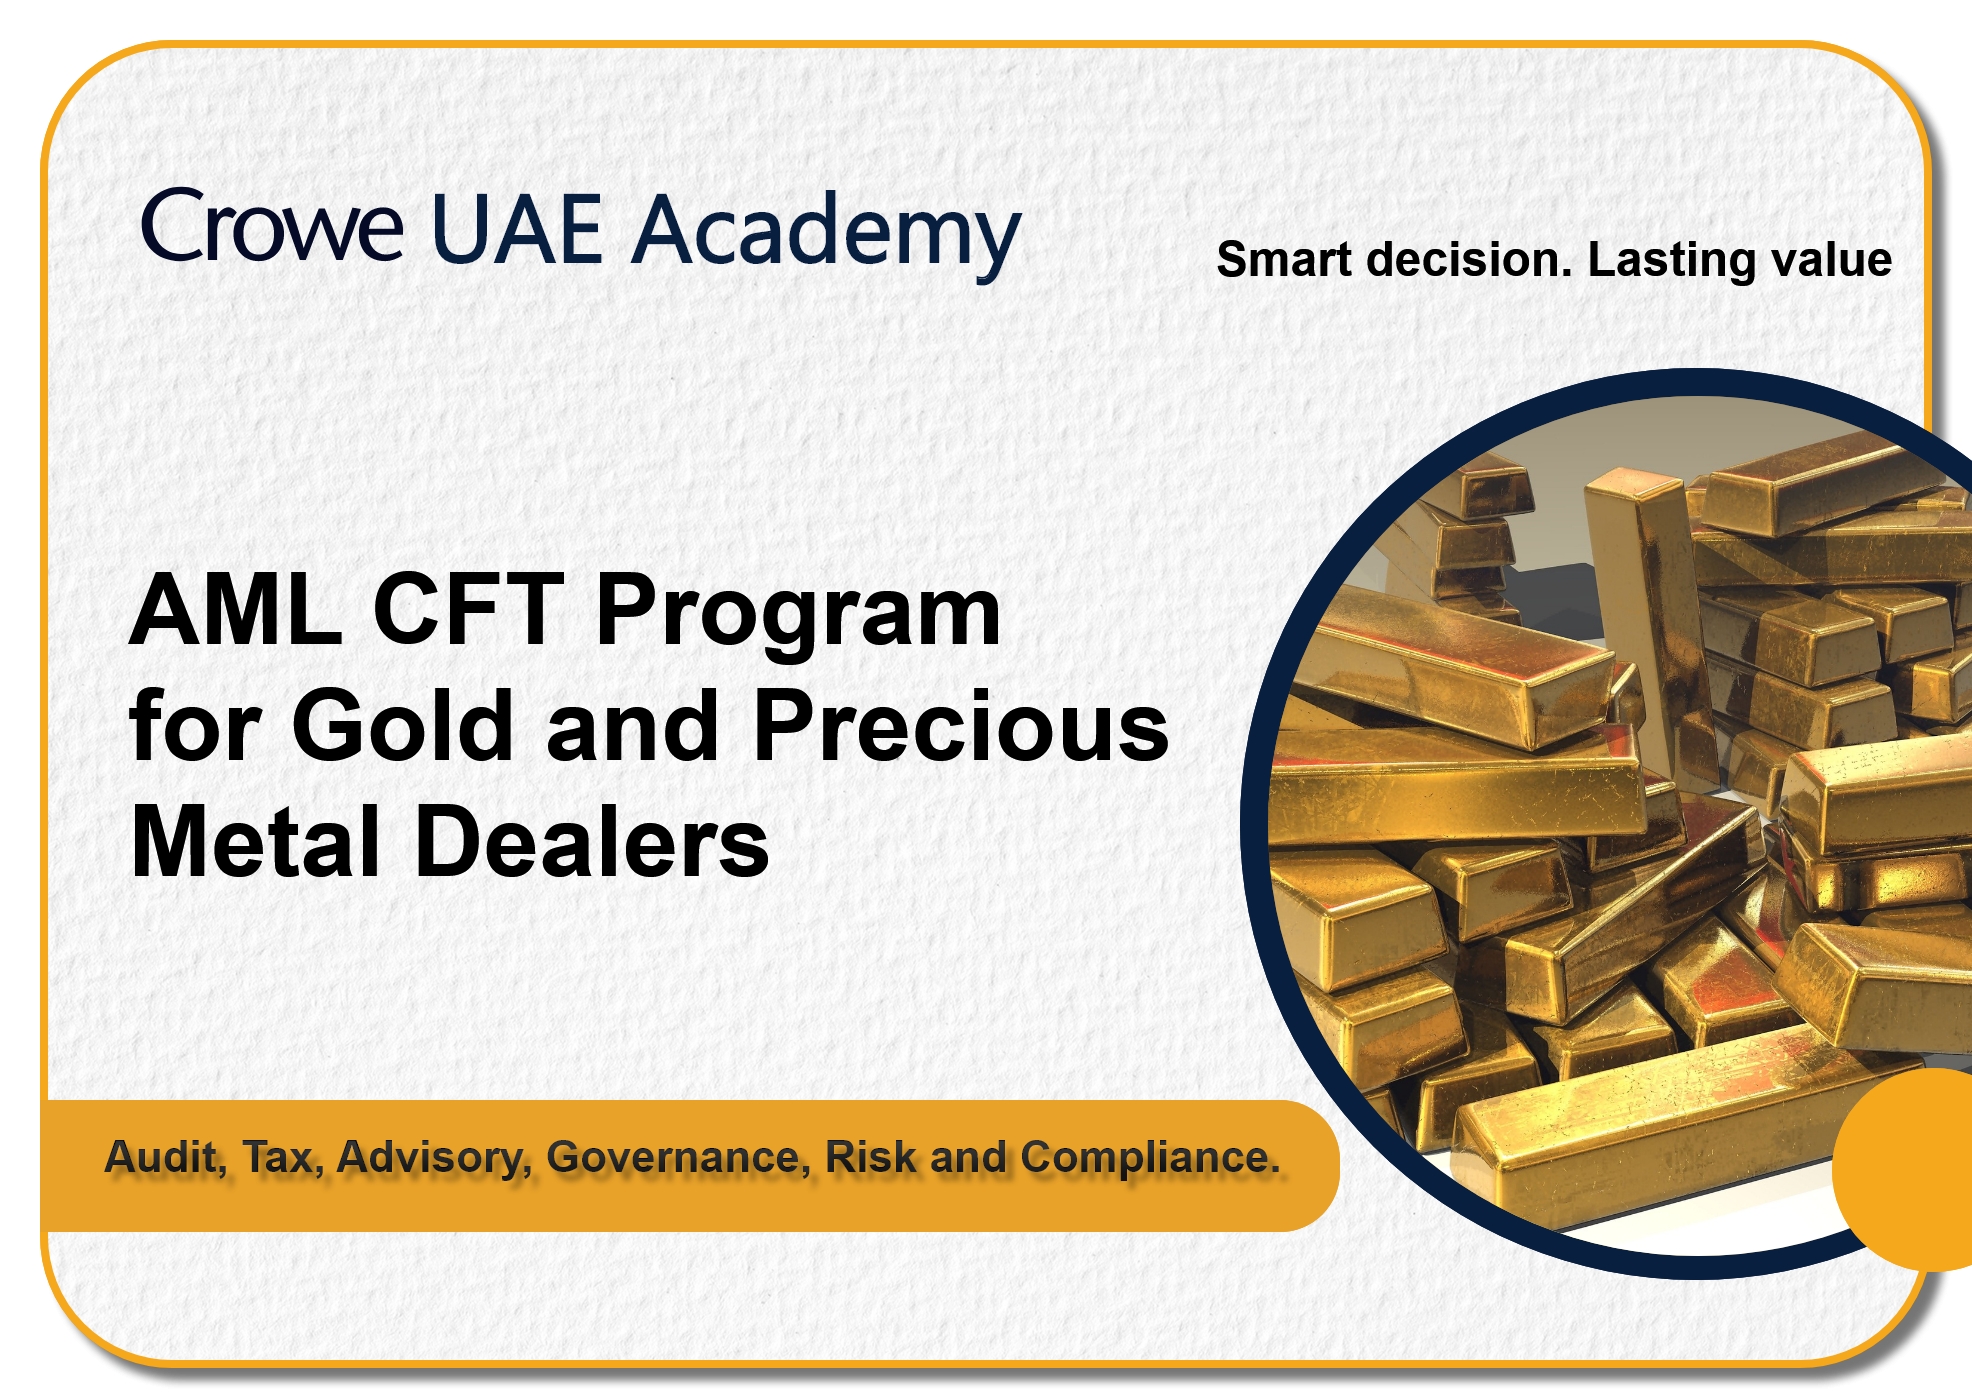 >AML CFT Program for Gold Dealers Image